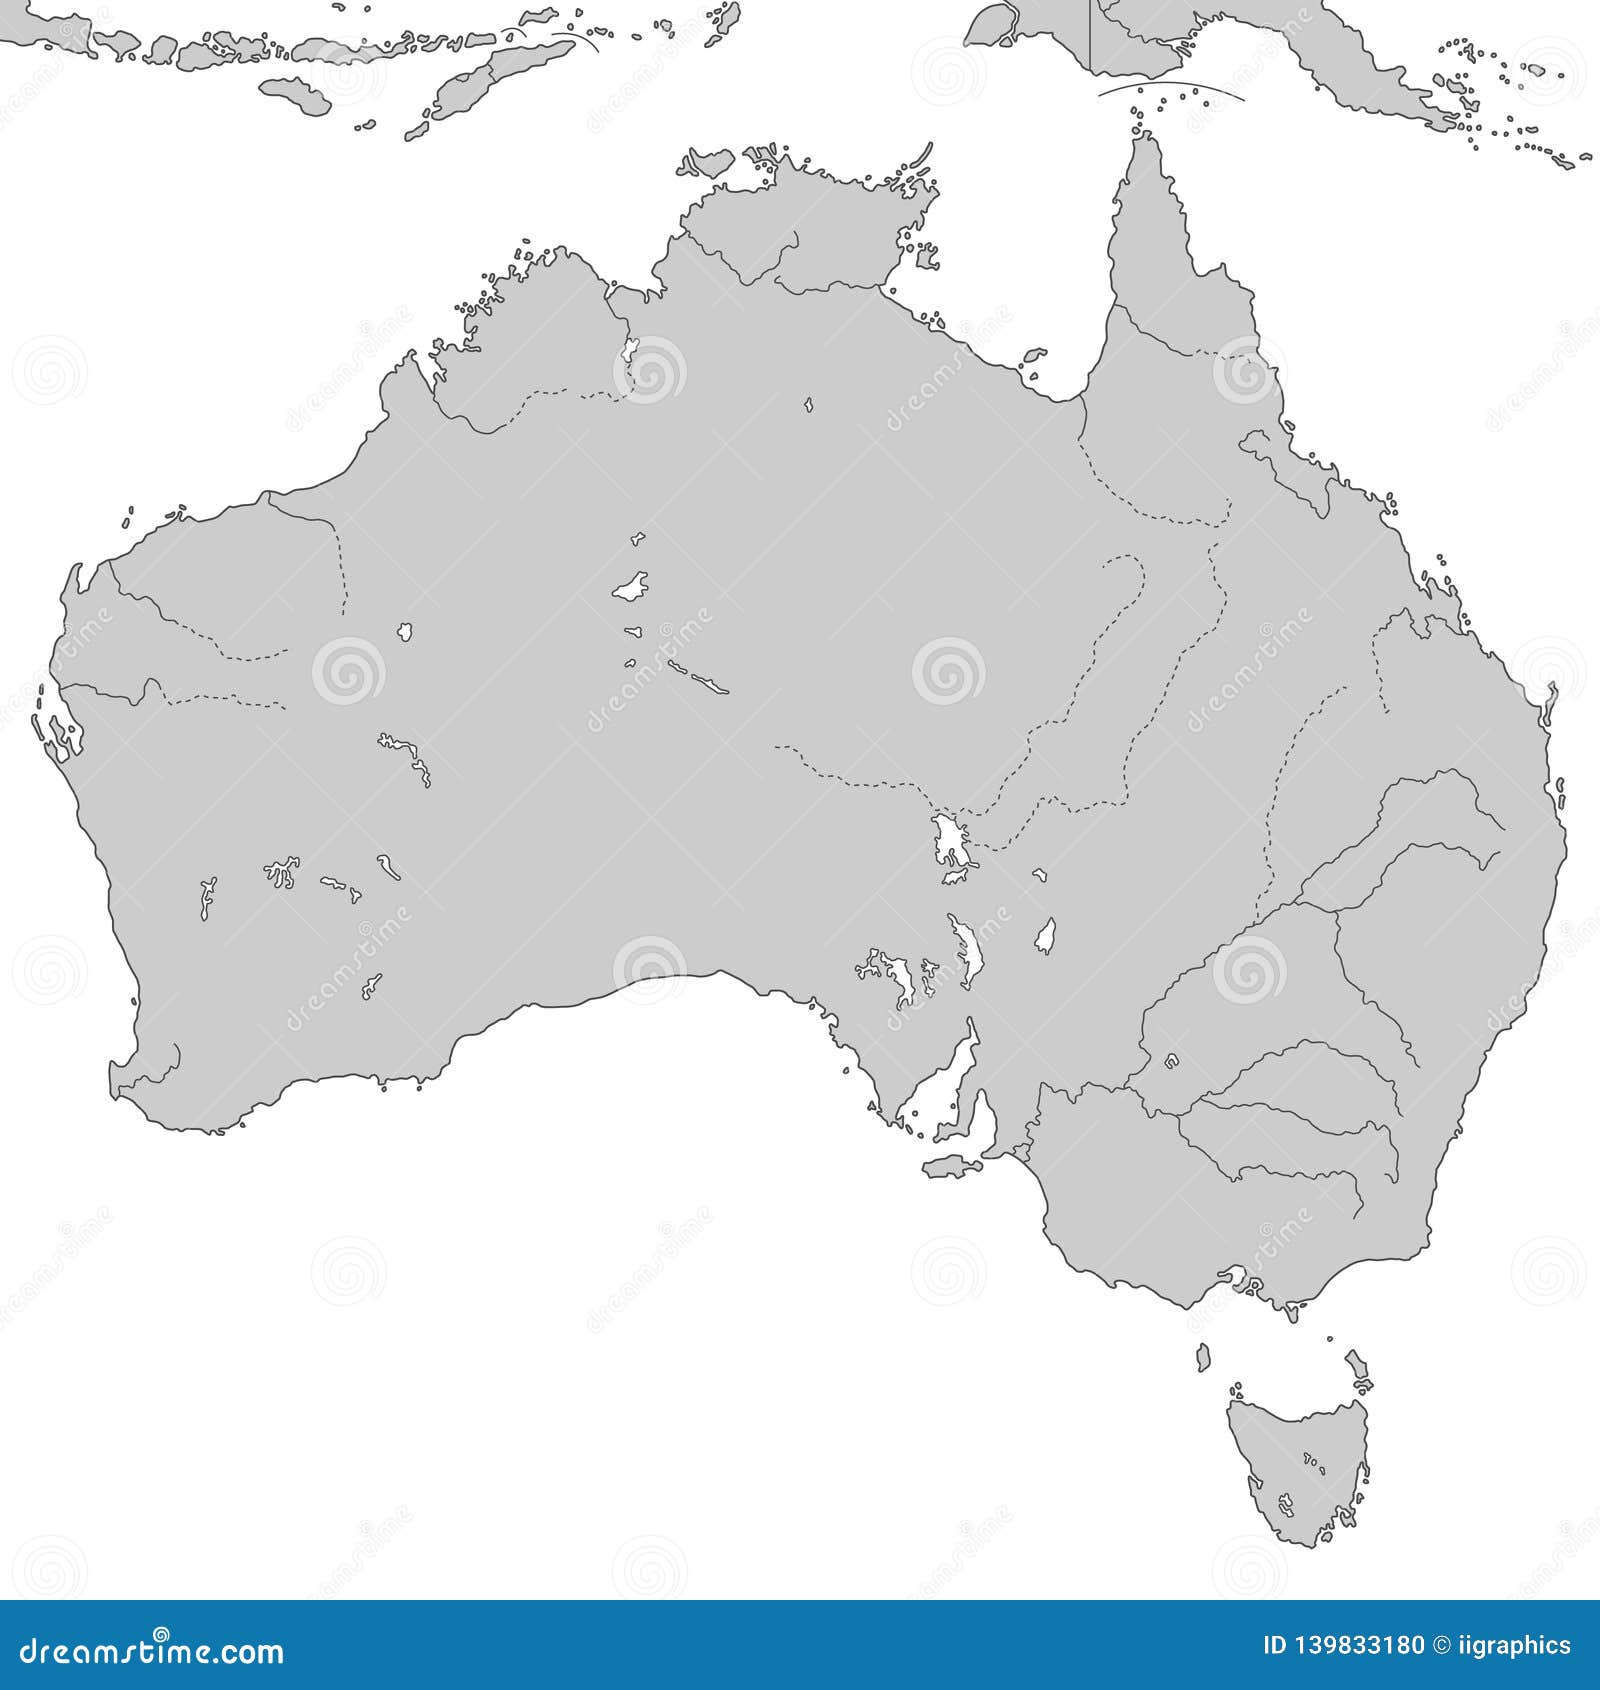 Контурные карты австралия 10 класс. Контурная карта Австралии. Конрурнаякарта Австралии. Карта Австралии черно белая. Контурная карота Австралии.